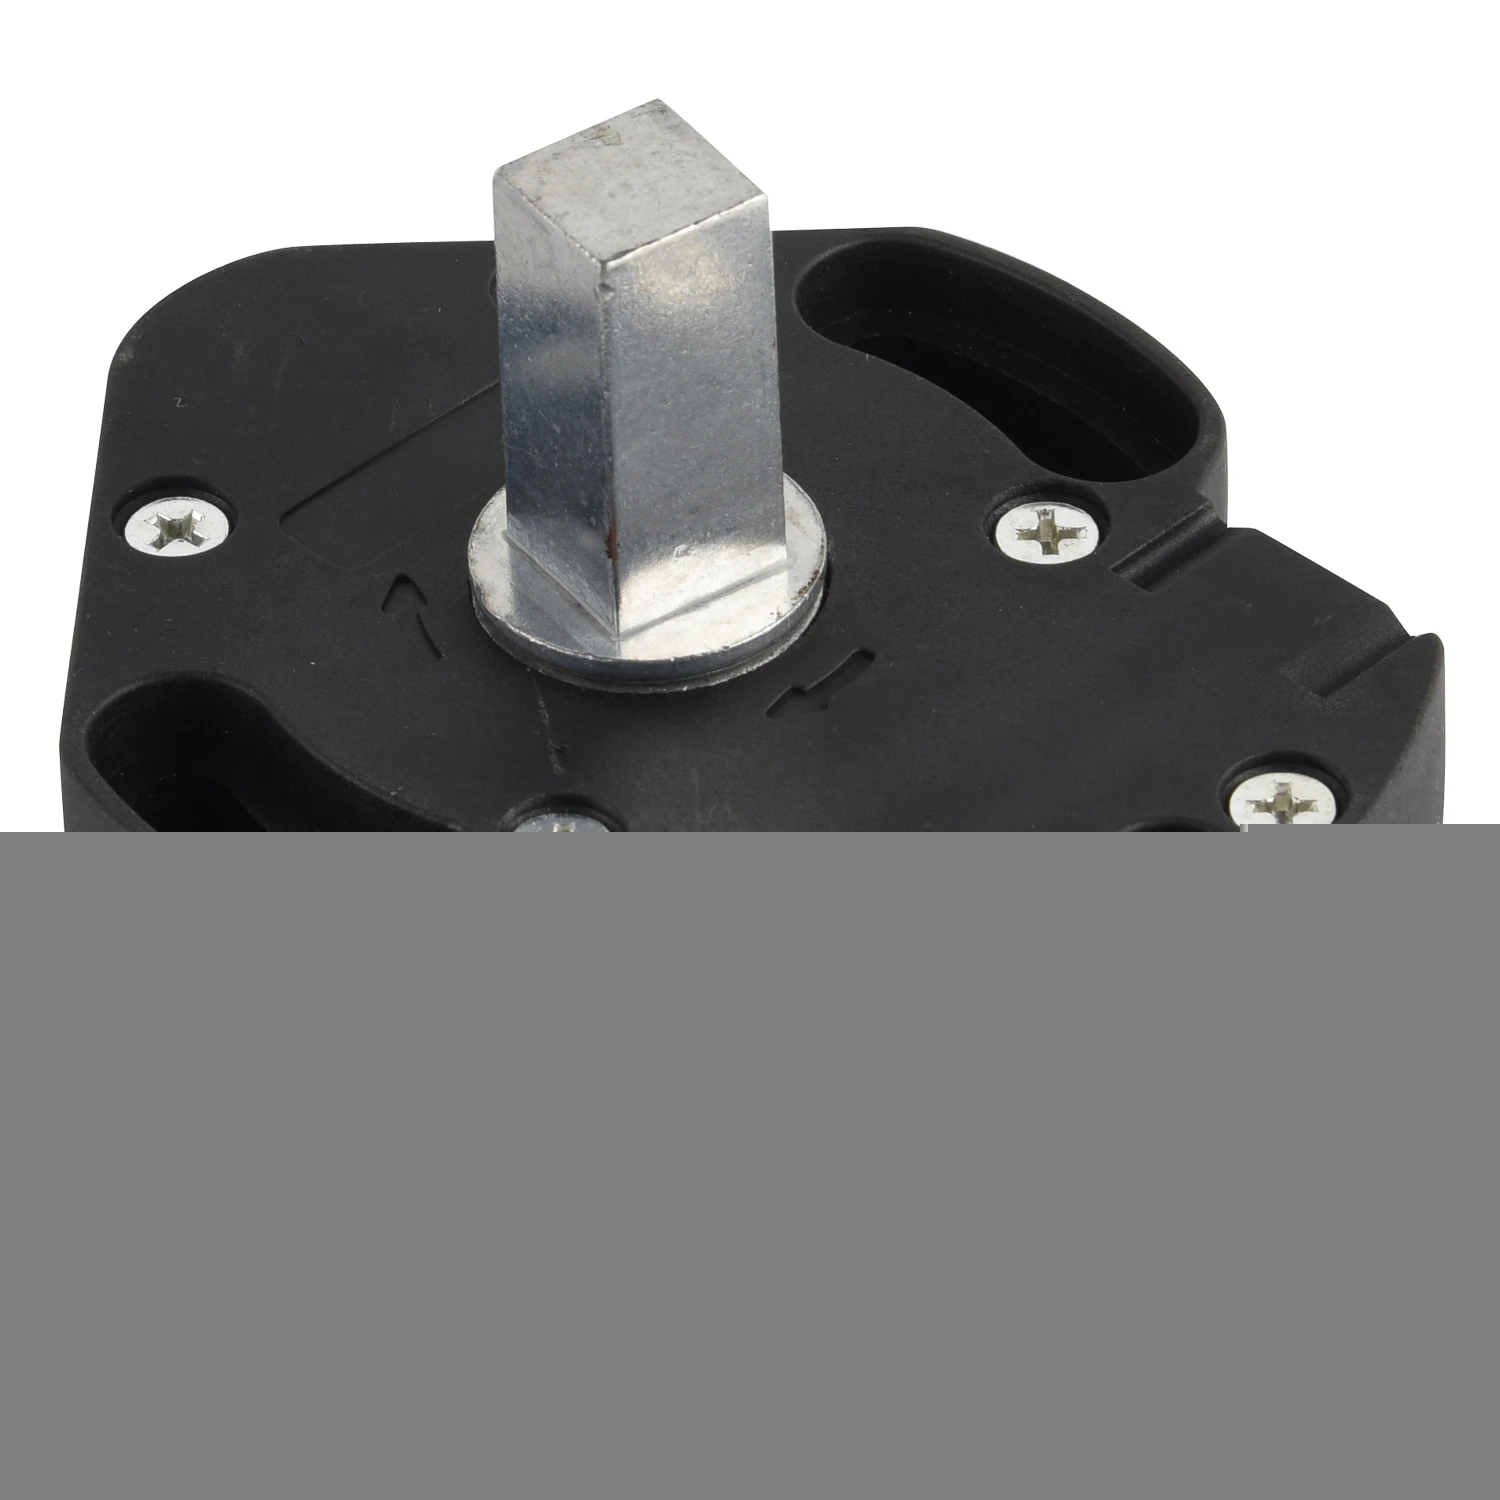 Aluminum Shutter component / Roller Shutter Accessories gear box crank wheel